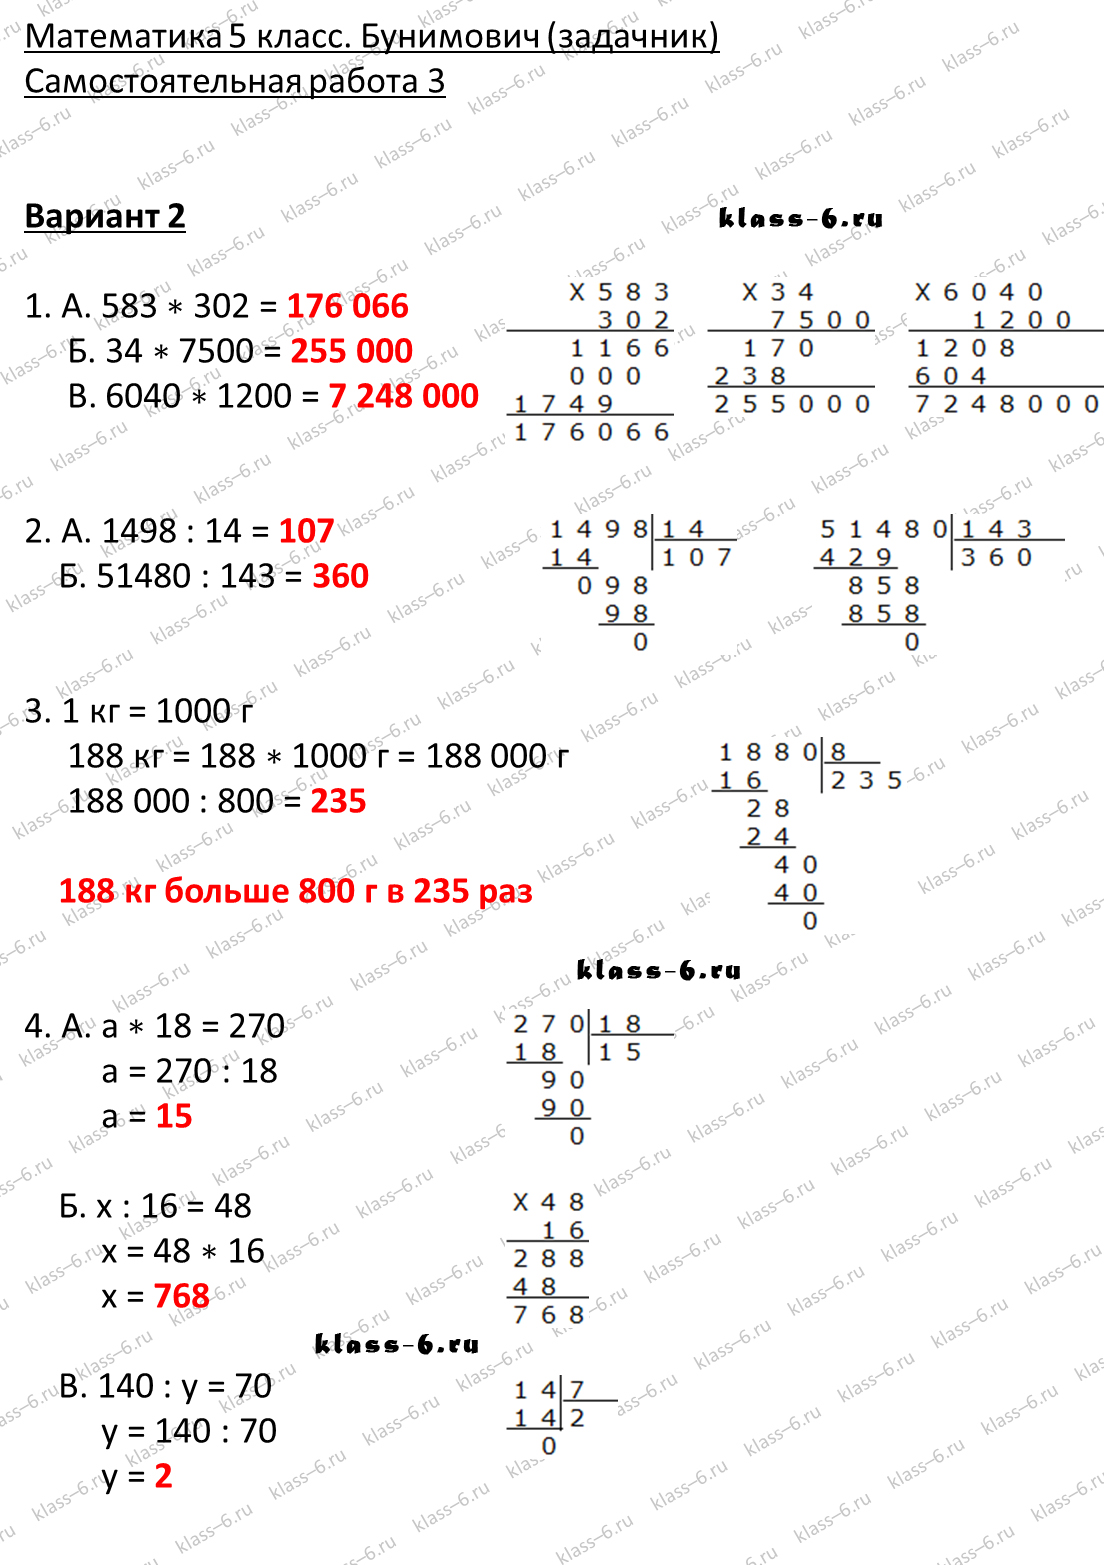 решебник и гдз по математике задачник Бунимович 5 класс самостоятельная работа 3-v2